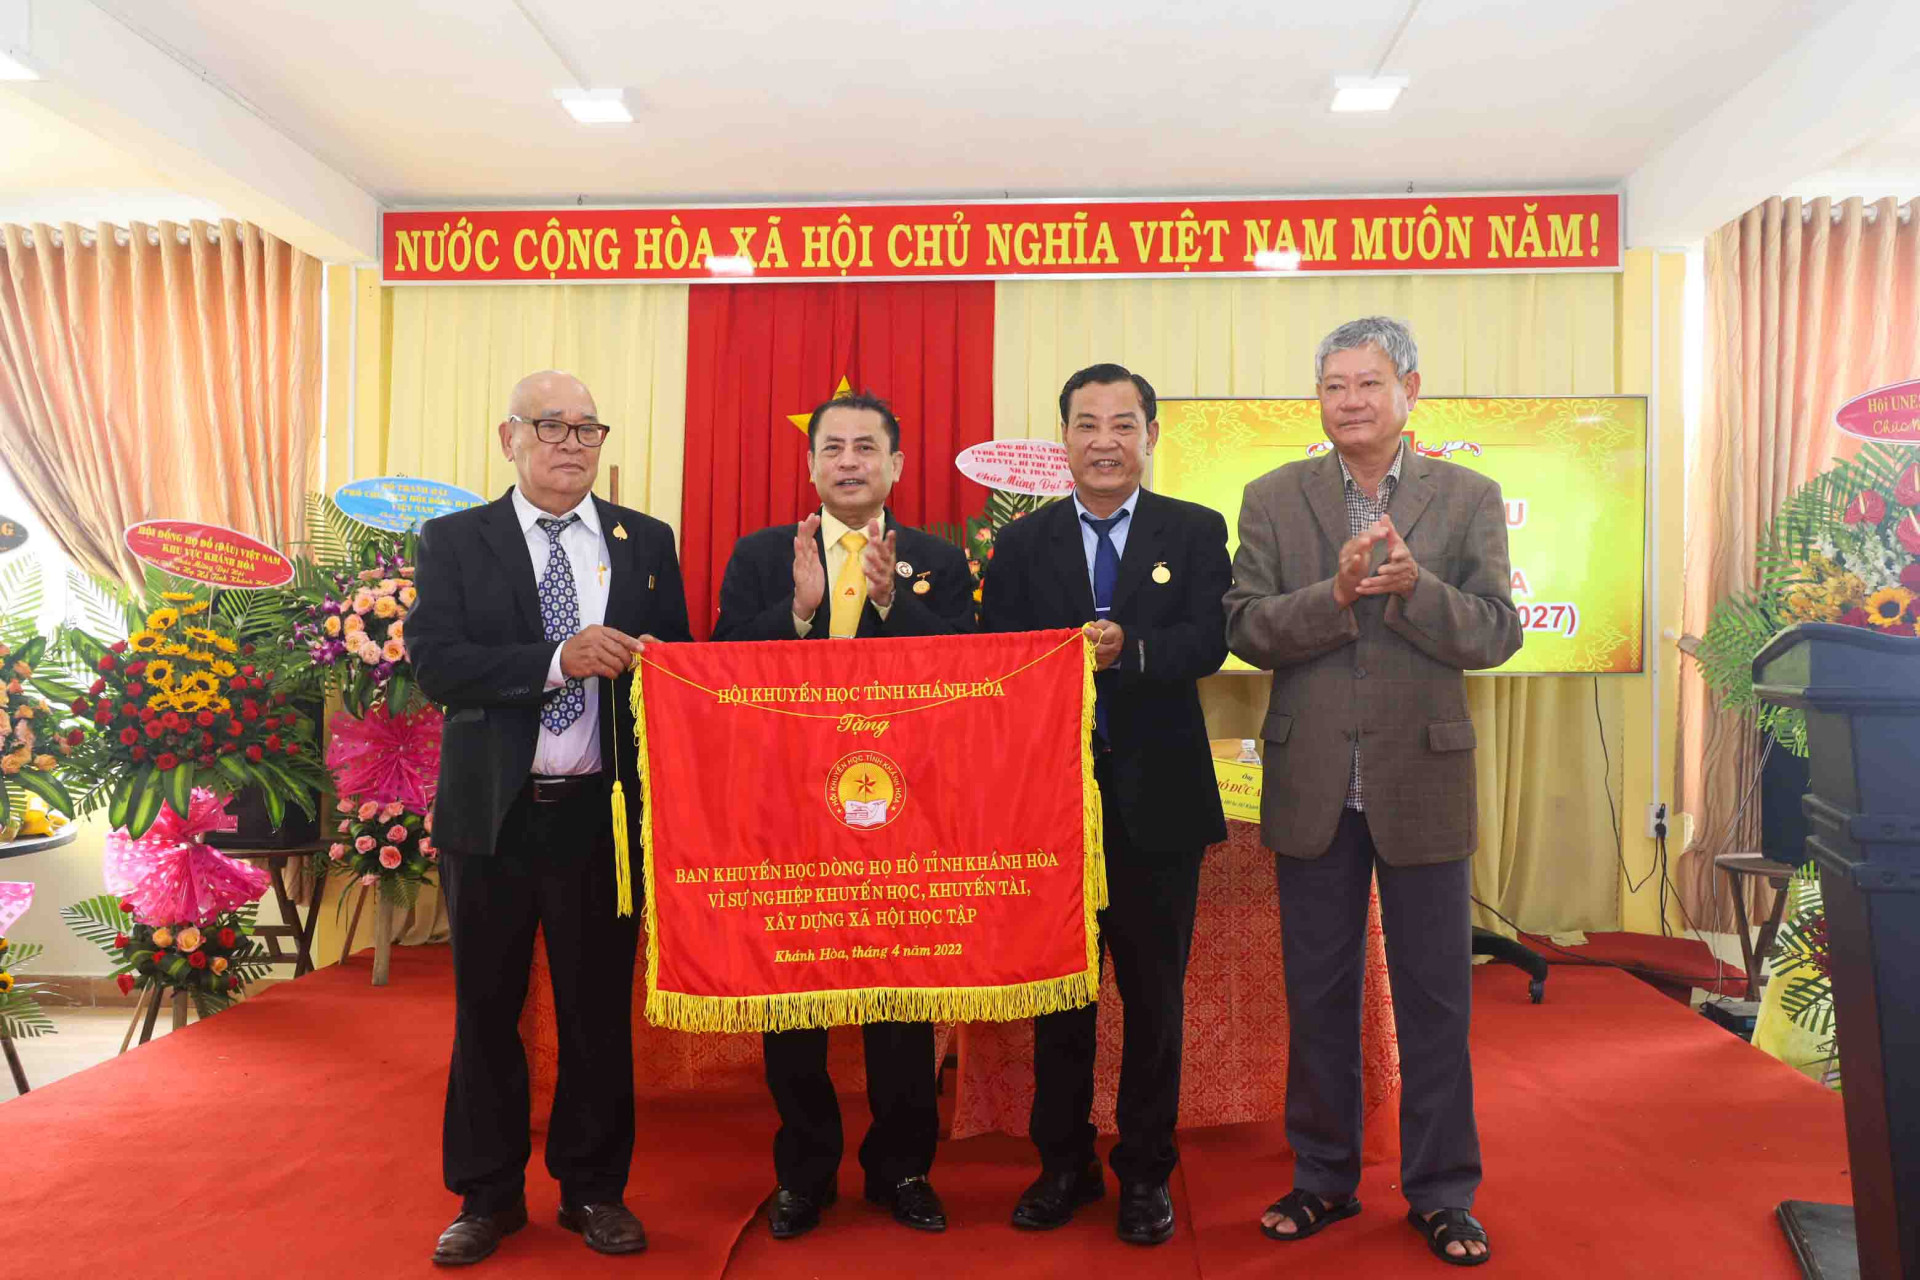 Ông Trần Quang Mẫn - Chủ tịch Hội Khuyến học tỉnh Khánh Hòa trao bức trướng cho Ban Khuyến học dòng họ Hồ. 